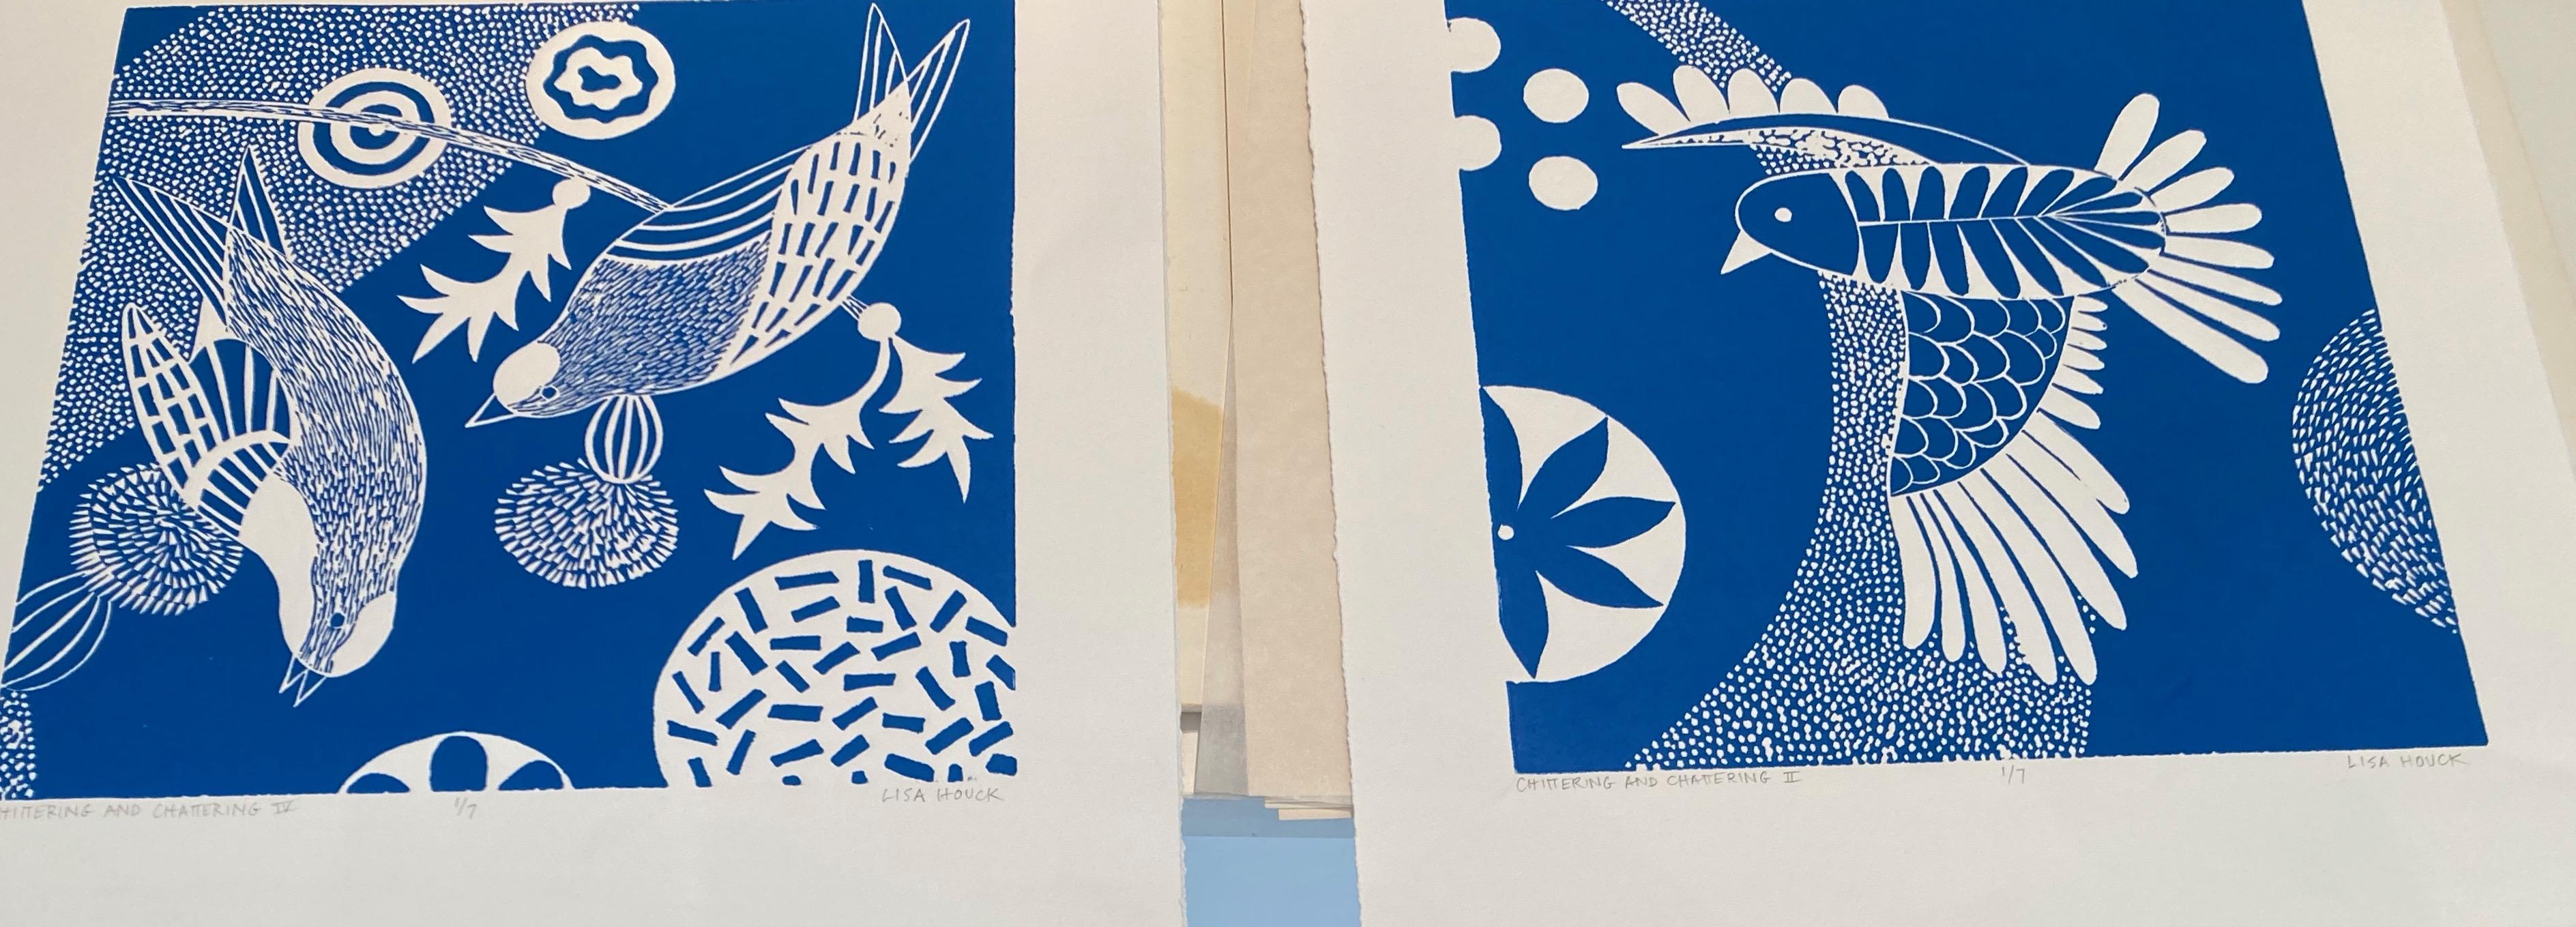 Chittering & Chattering V  Folk inspirierte Vogelserie im Linolschliff in Blau und Weiß (Volkskunst), Print, von Lisa Houck